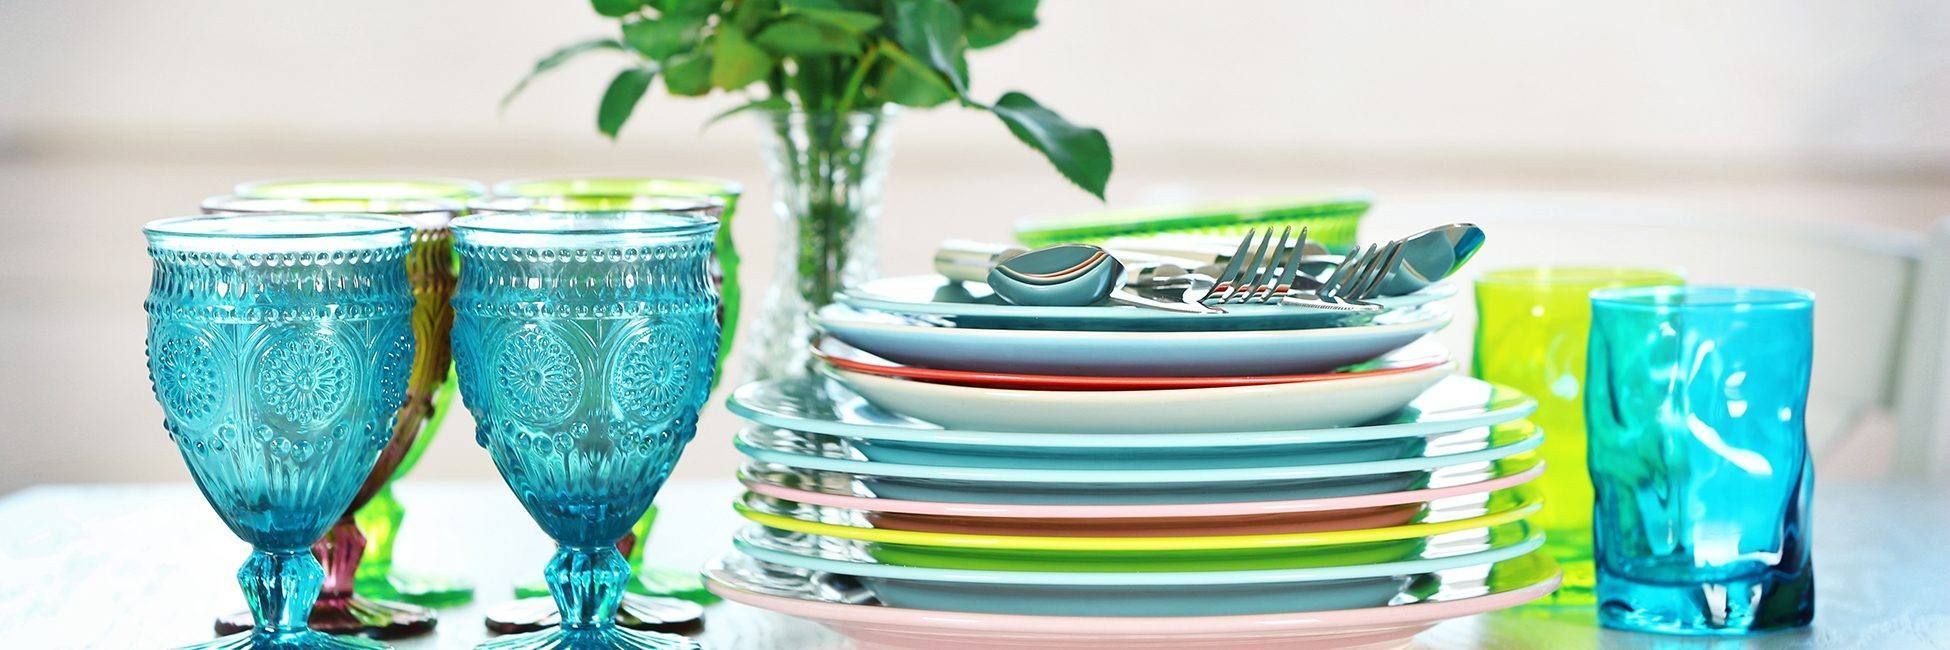 8 важных вопросов, которые помогут вам выбрать идеальный комплект посуды